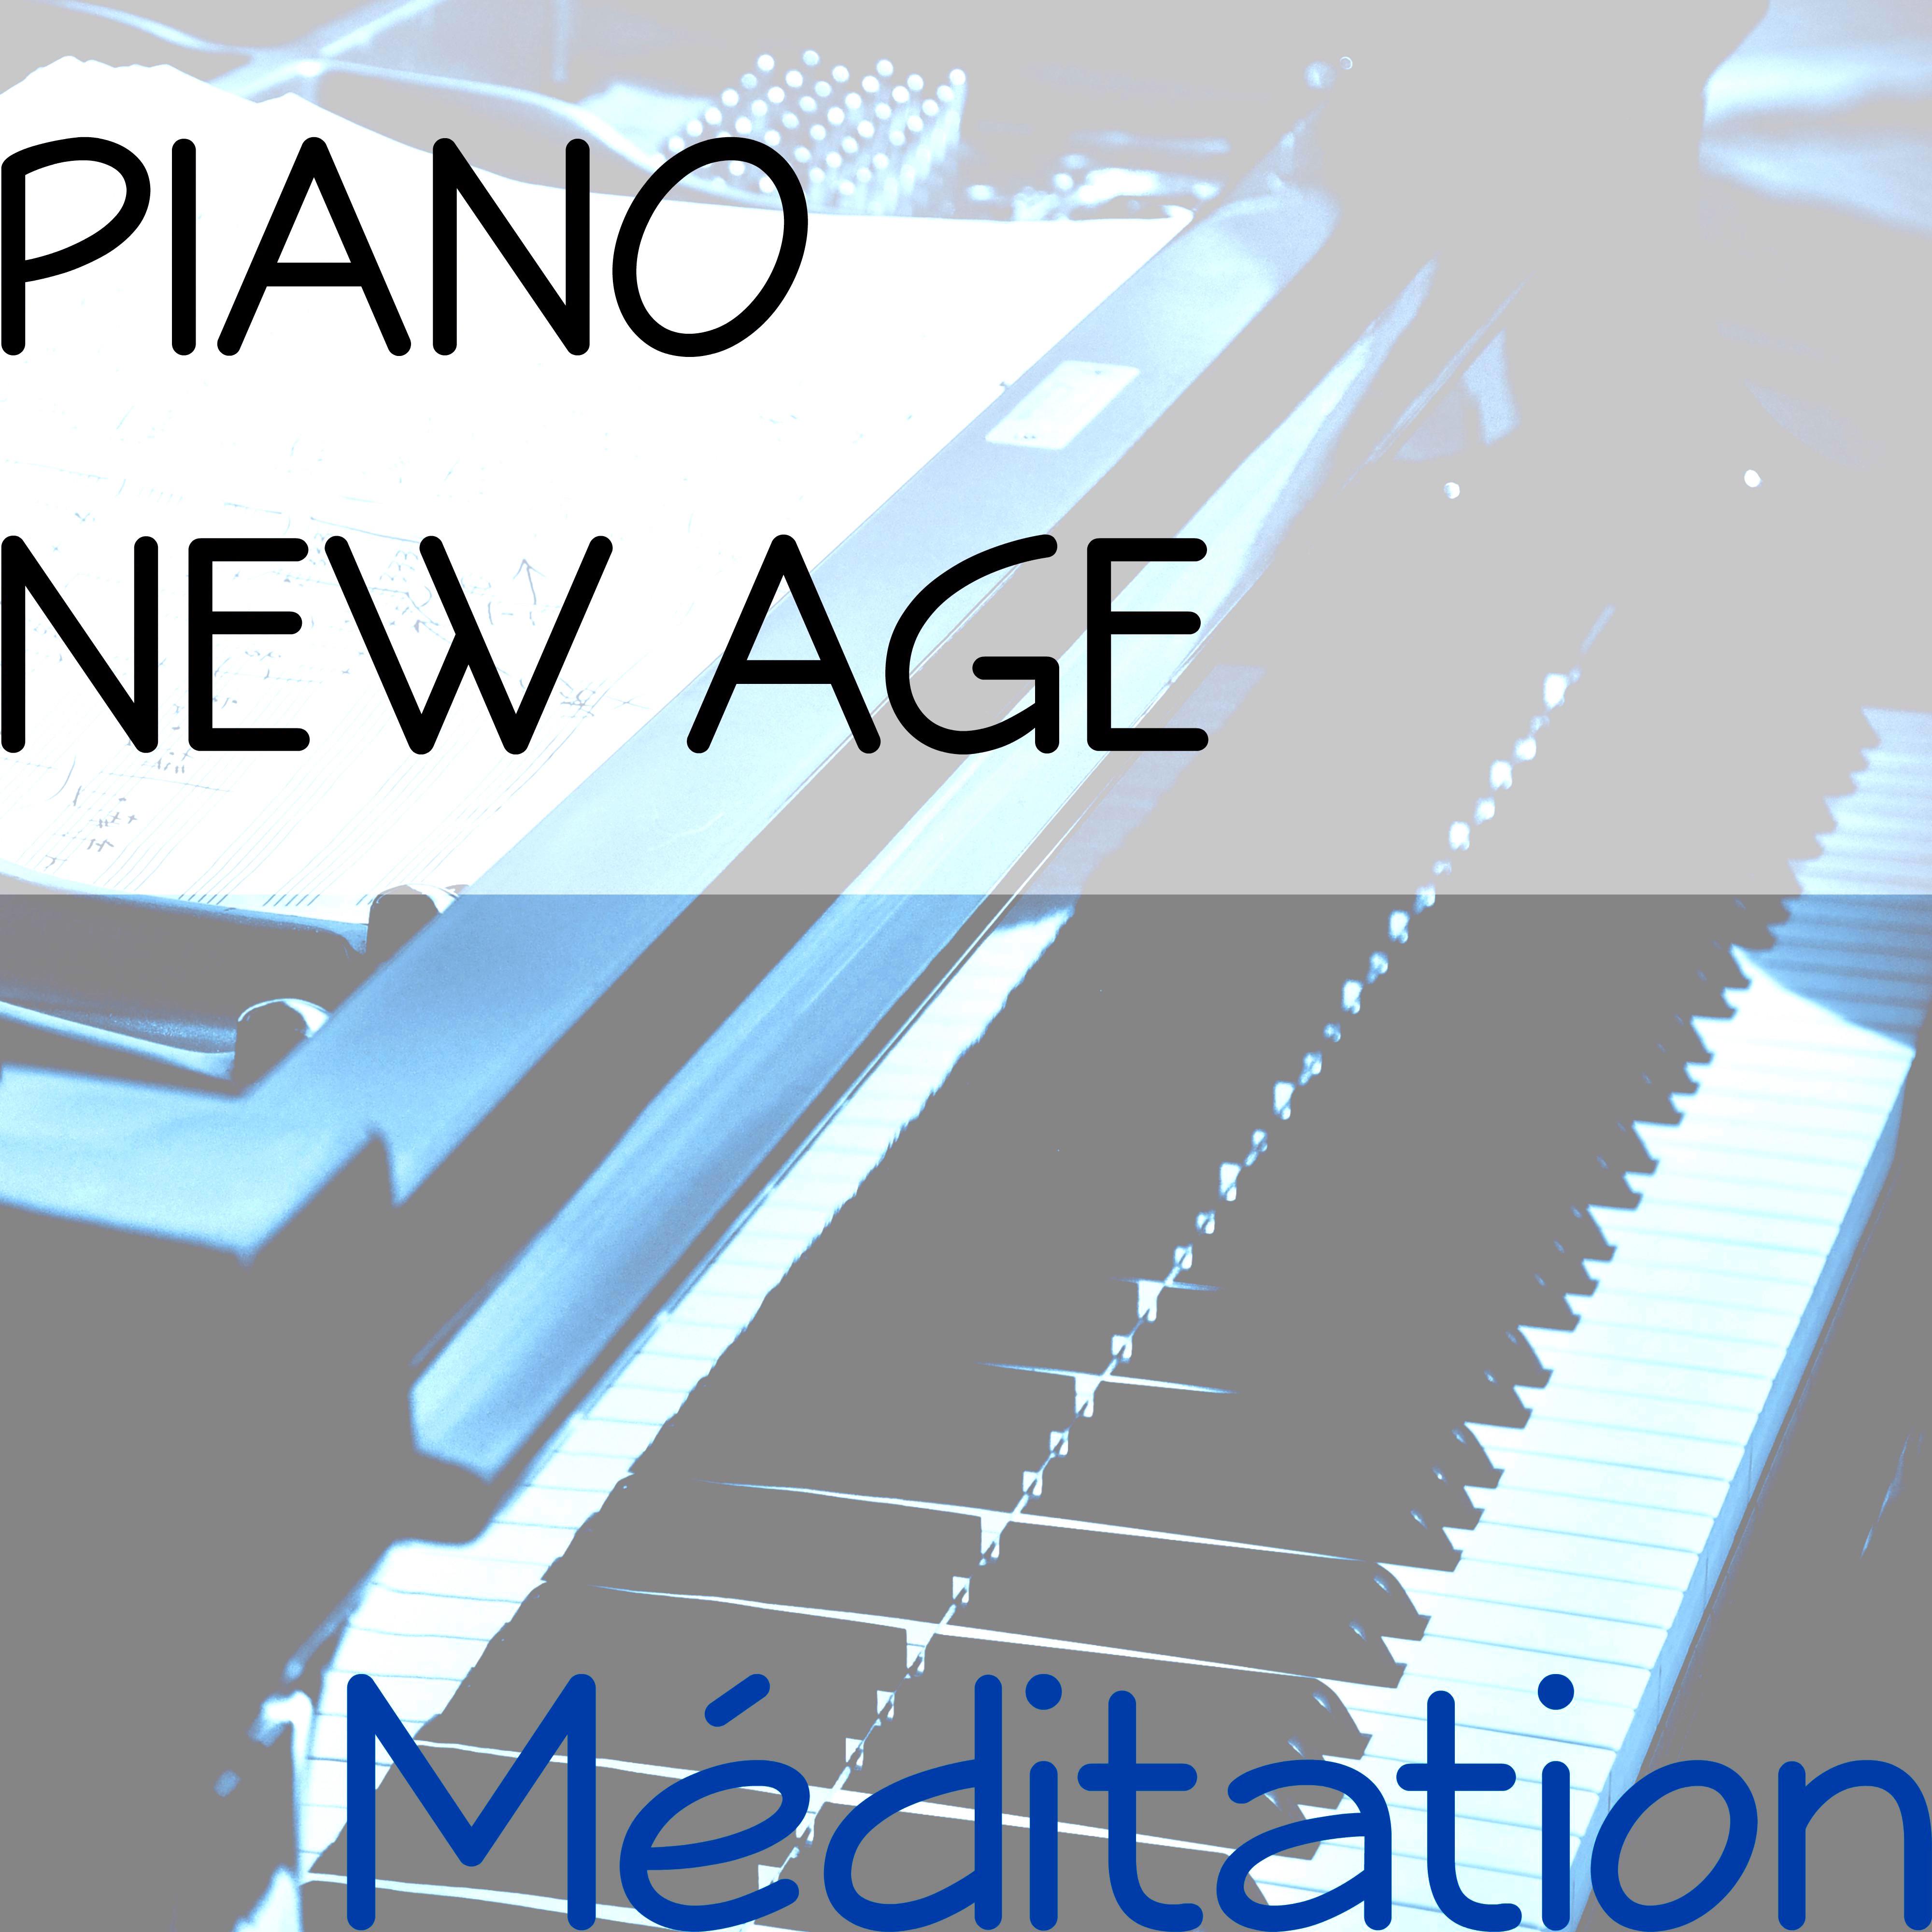 Piano New Age Me ditation  Reiki, Massage et Zen pour votre Se re nite et Bien tre